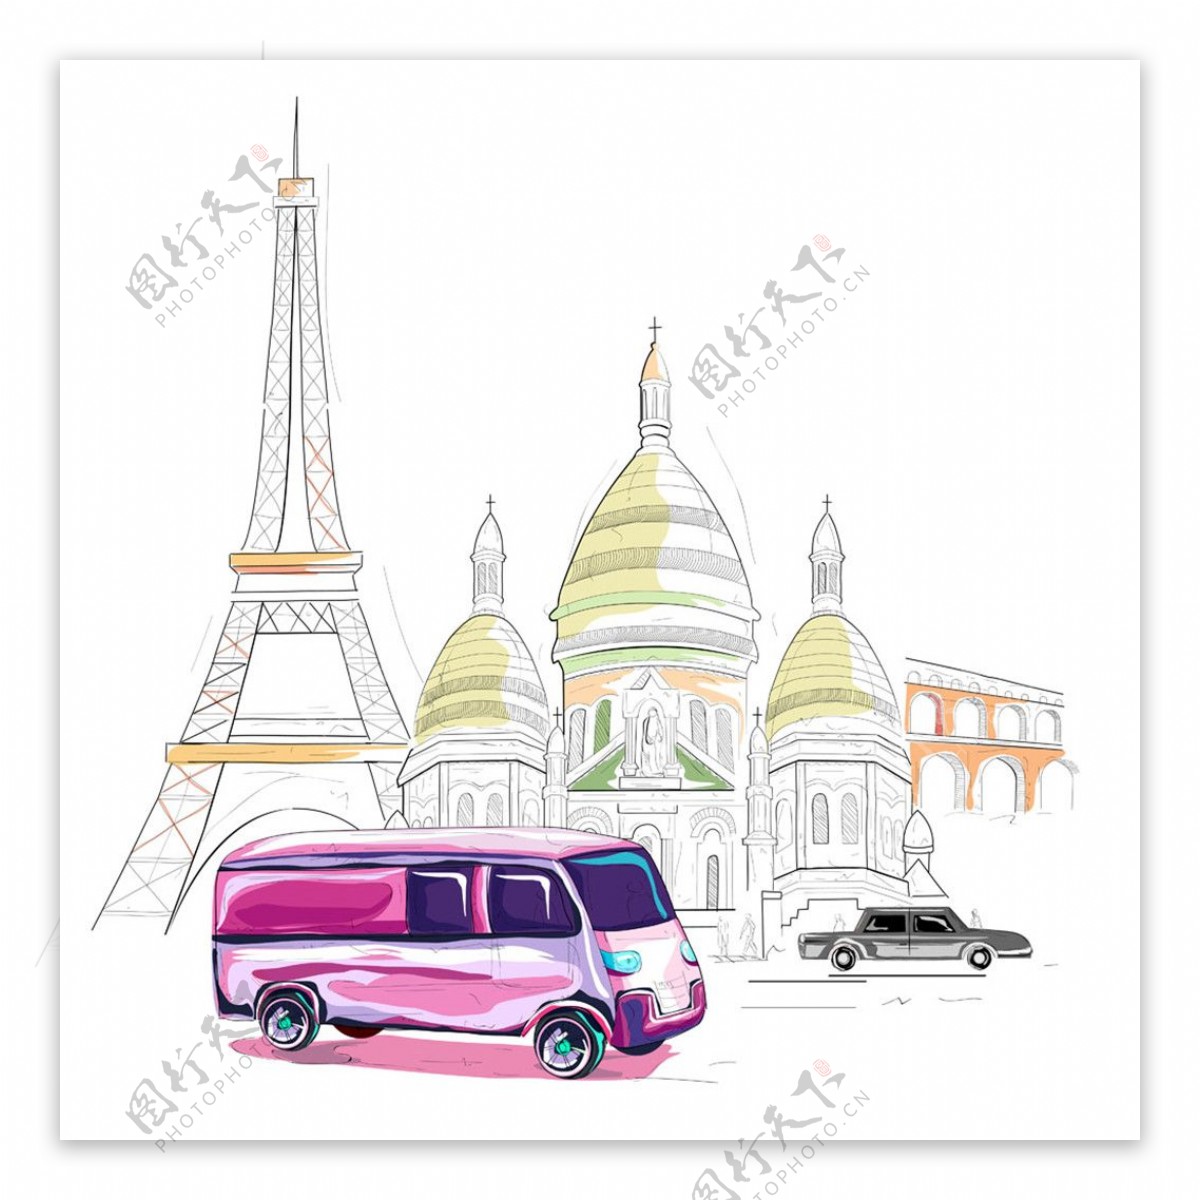 巴黎铁塔和旅游巴士图片